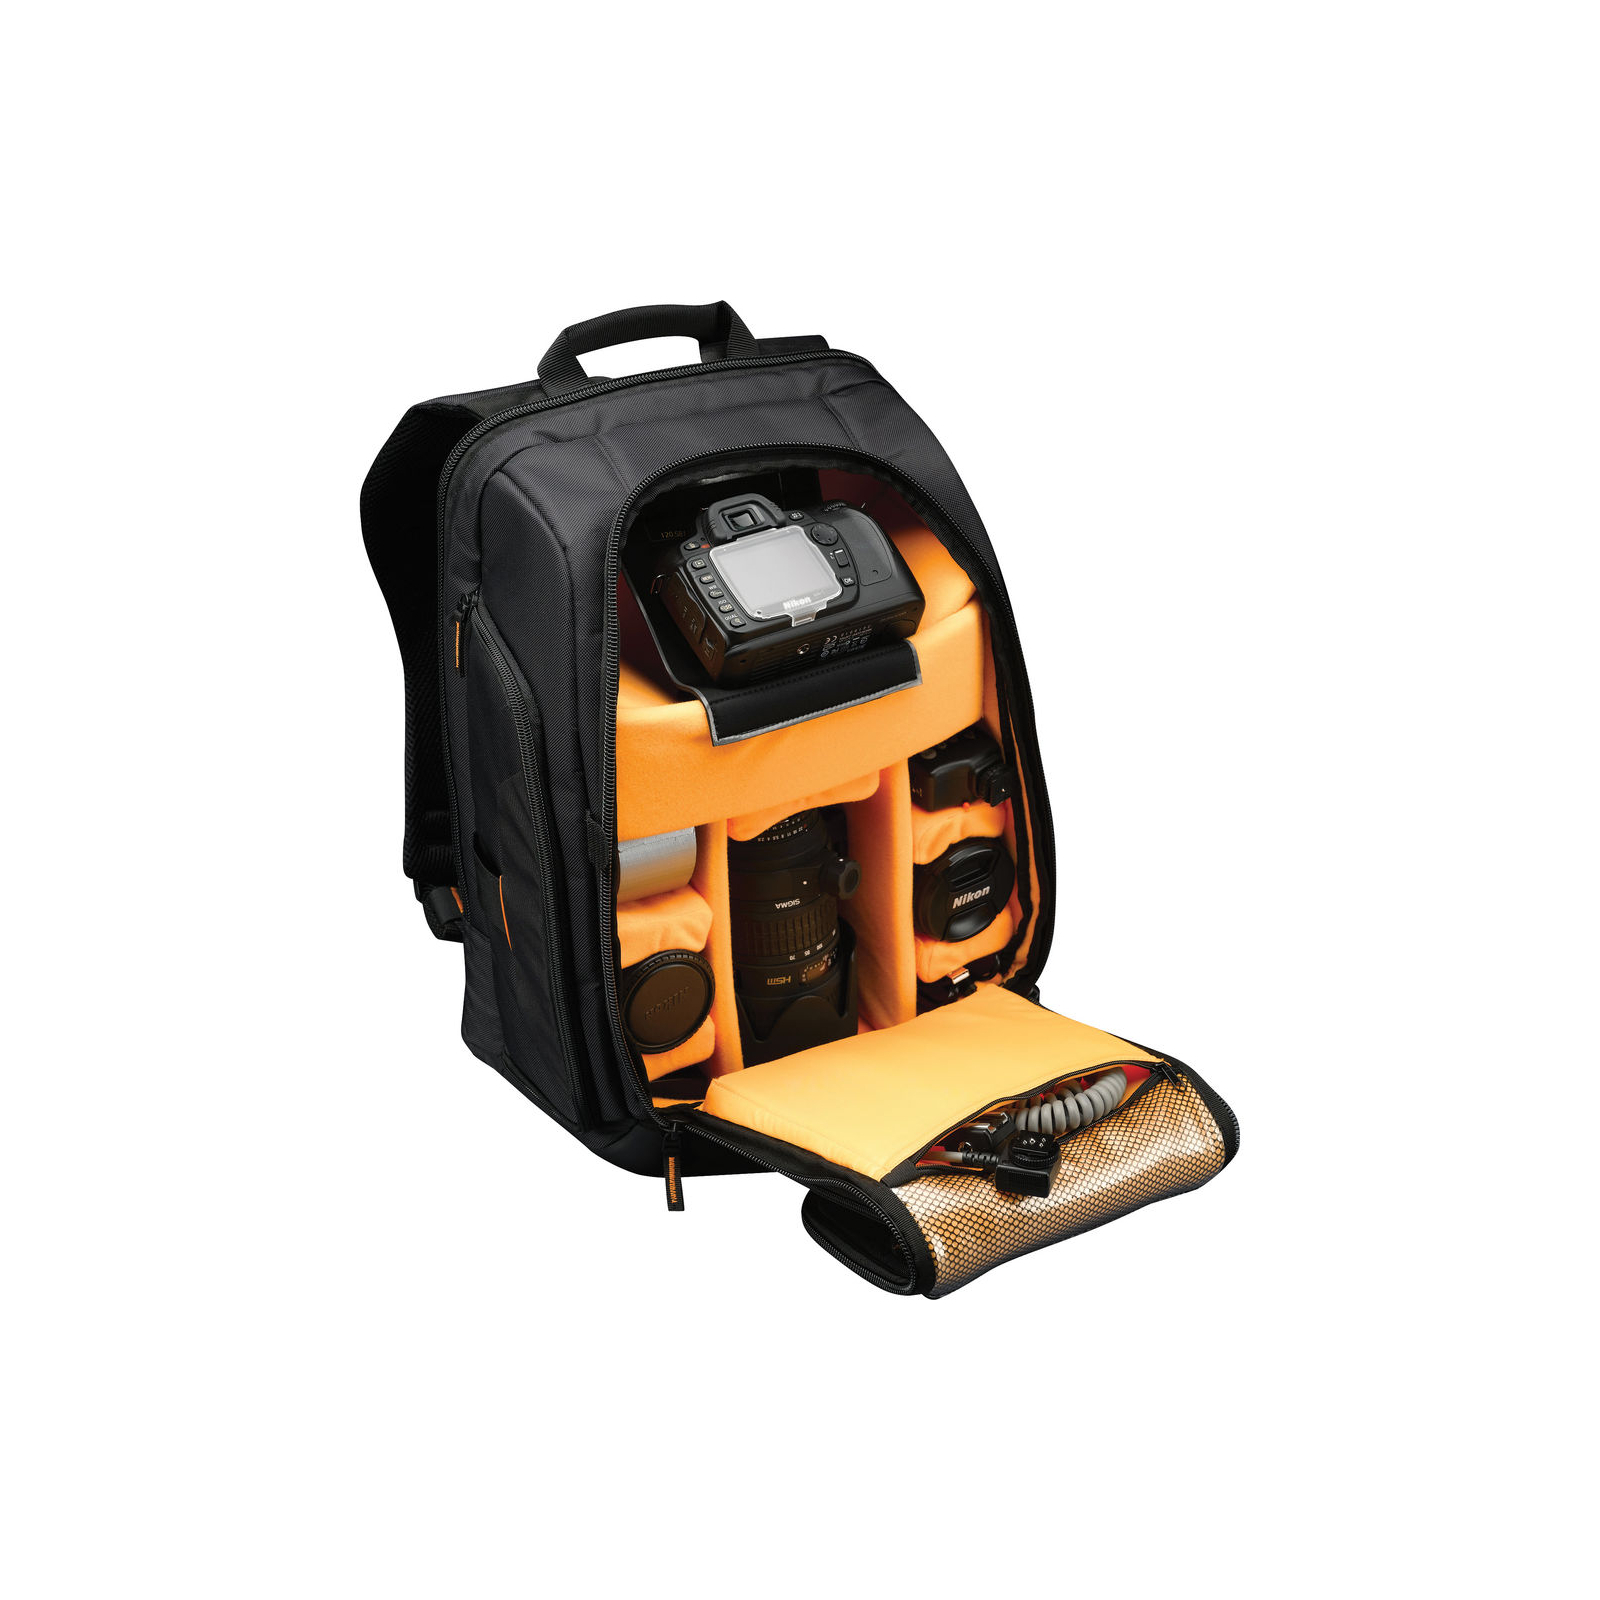 Рюкзак для ноутбука Case Logic 17" Camera/Laptop SLRC206 Black (SLRC206) изображение 3